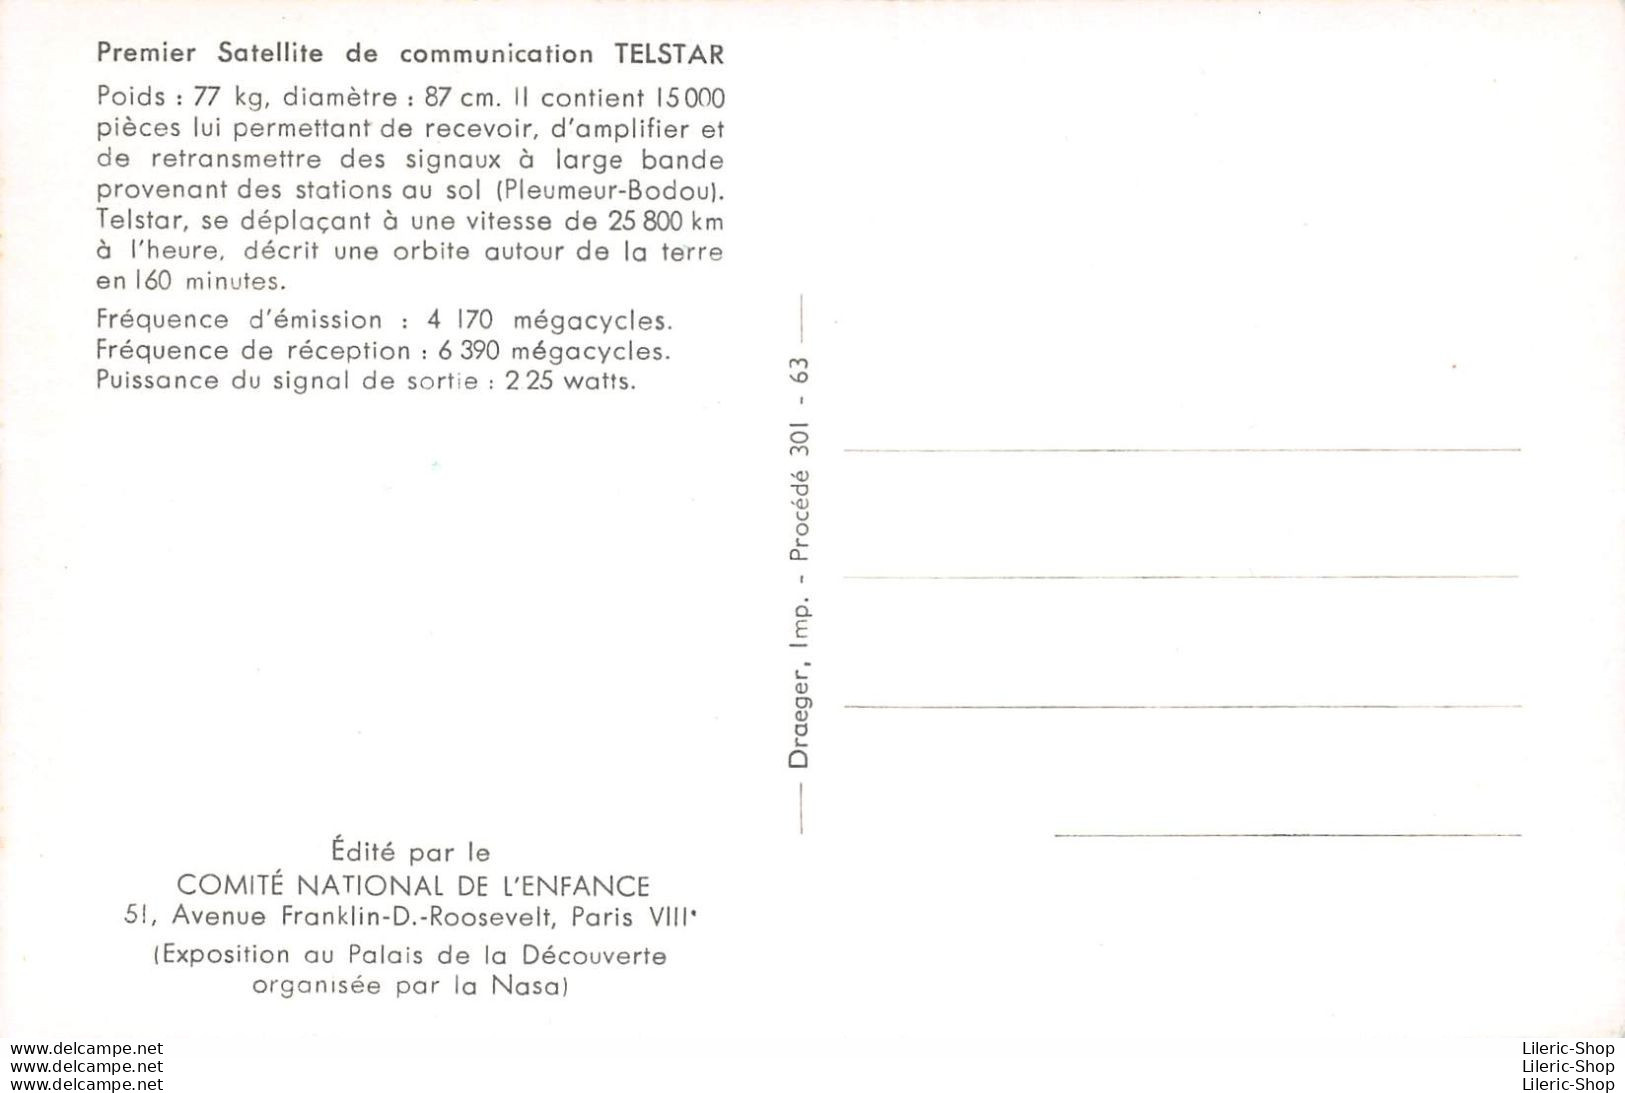 Série de 3 cpsm sur l'Exposition au Palais de la découverte organisée par la Nasa en 1962